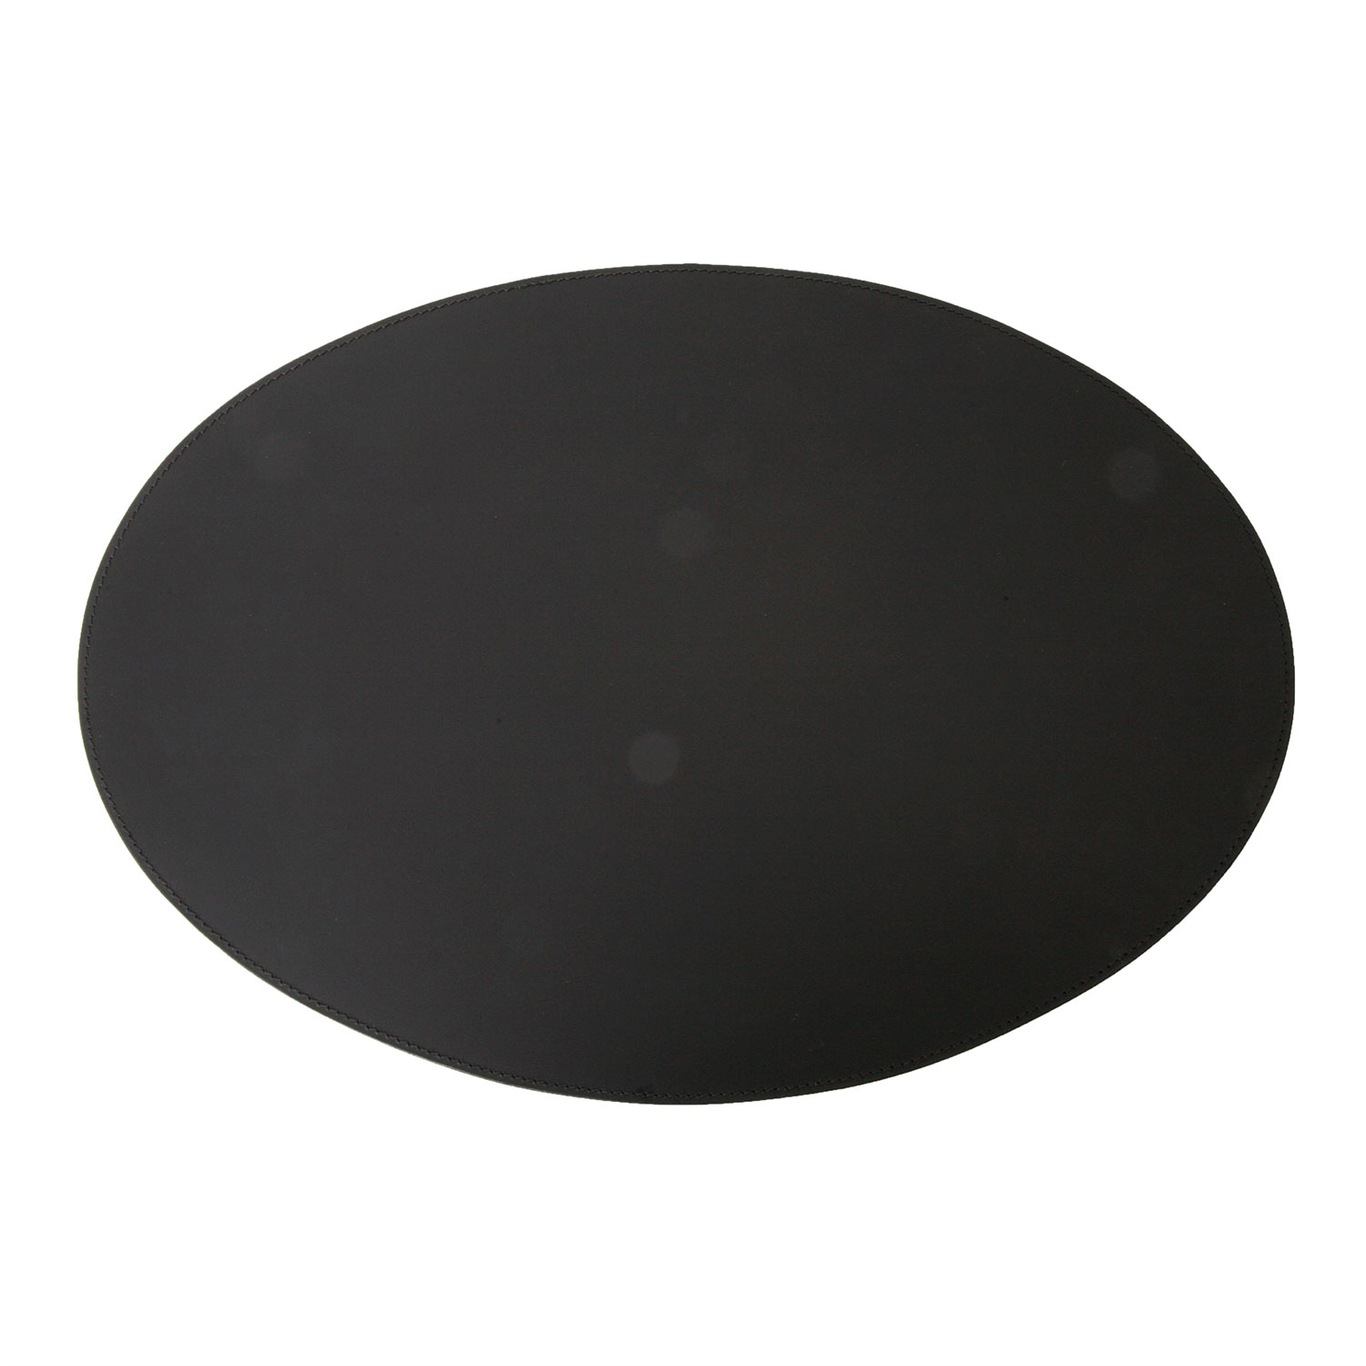 Placemat Oval 35x48cm, Black